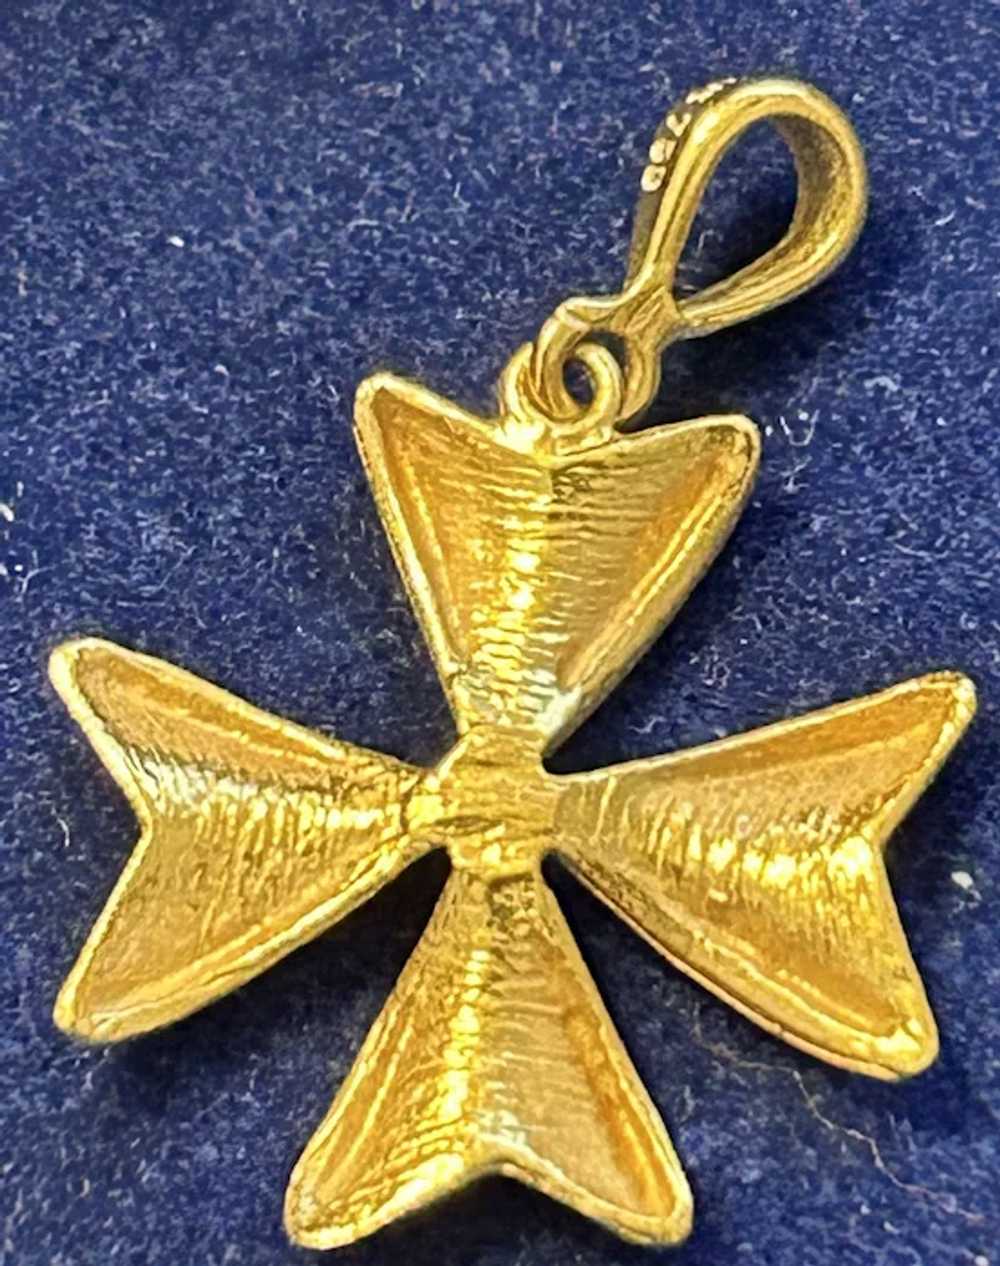 750  Gold  4 leaf Clover charm - image 3